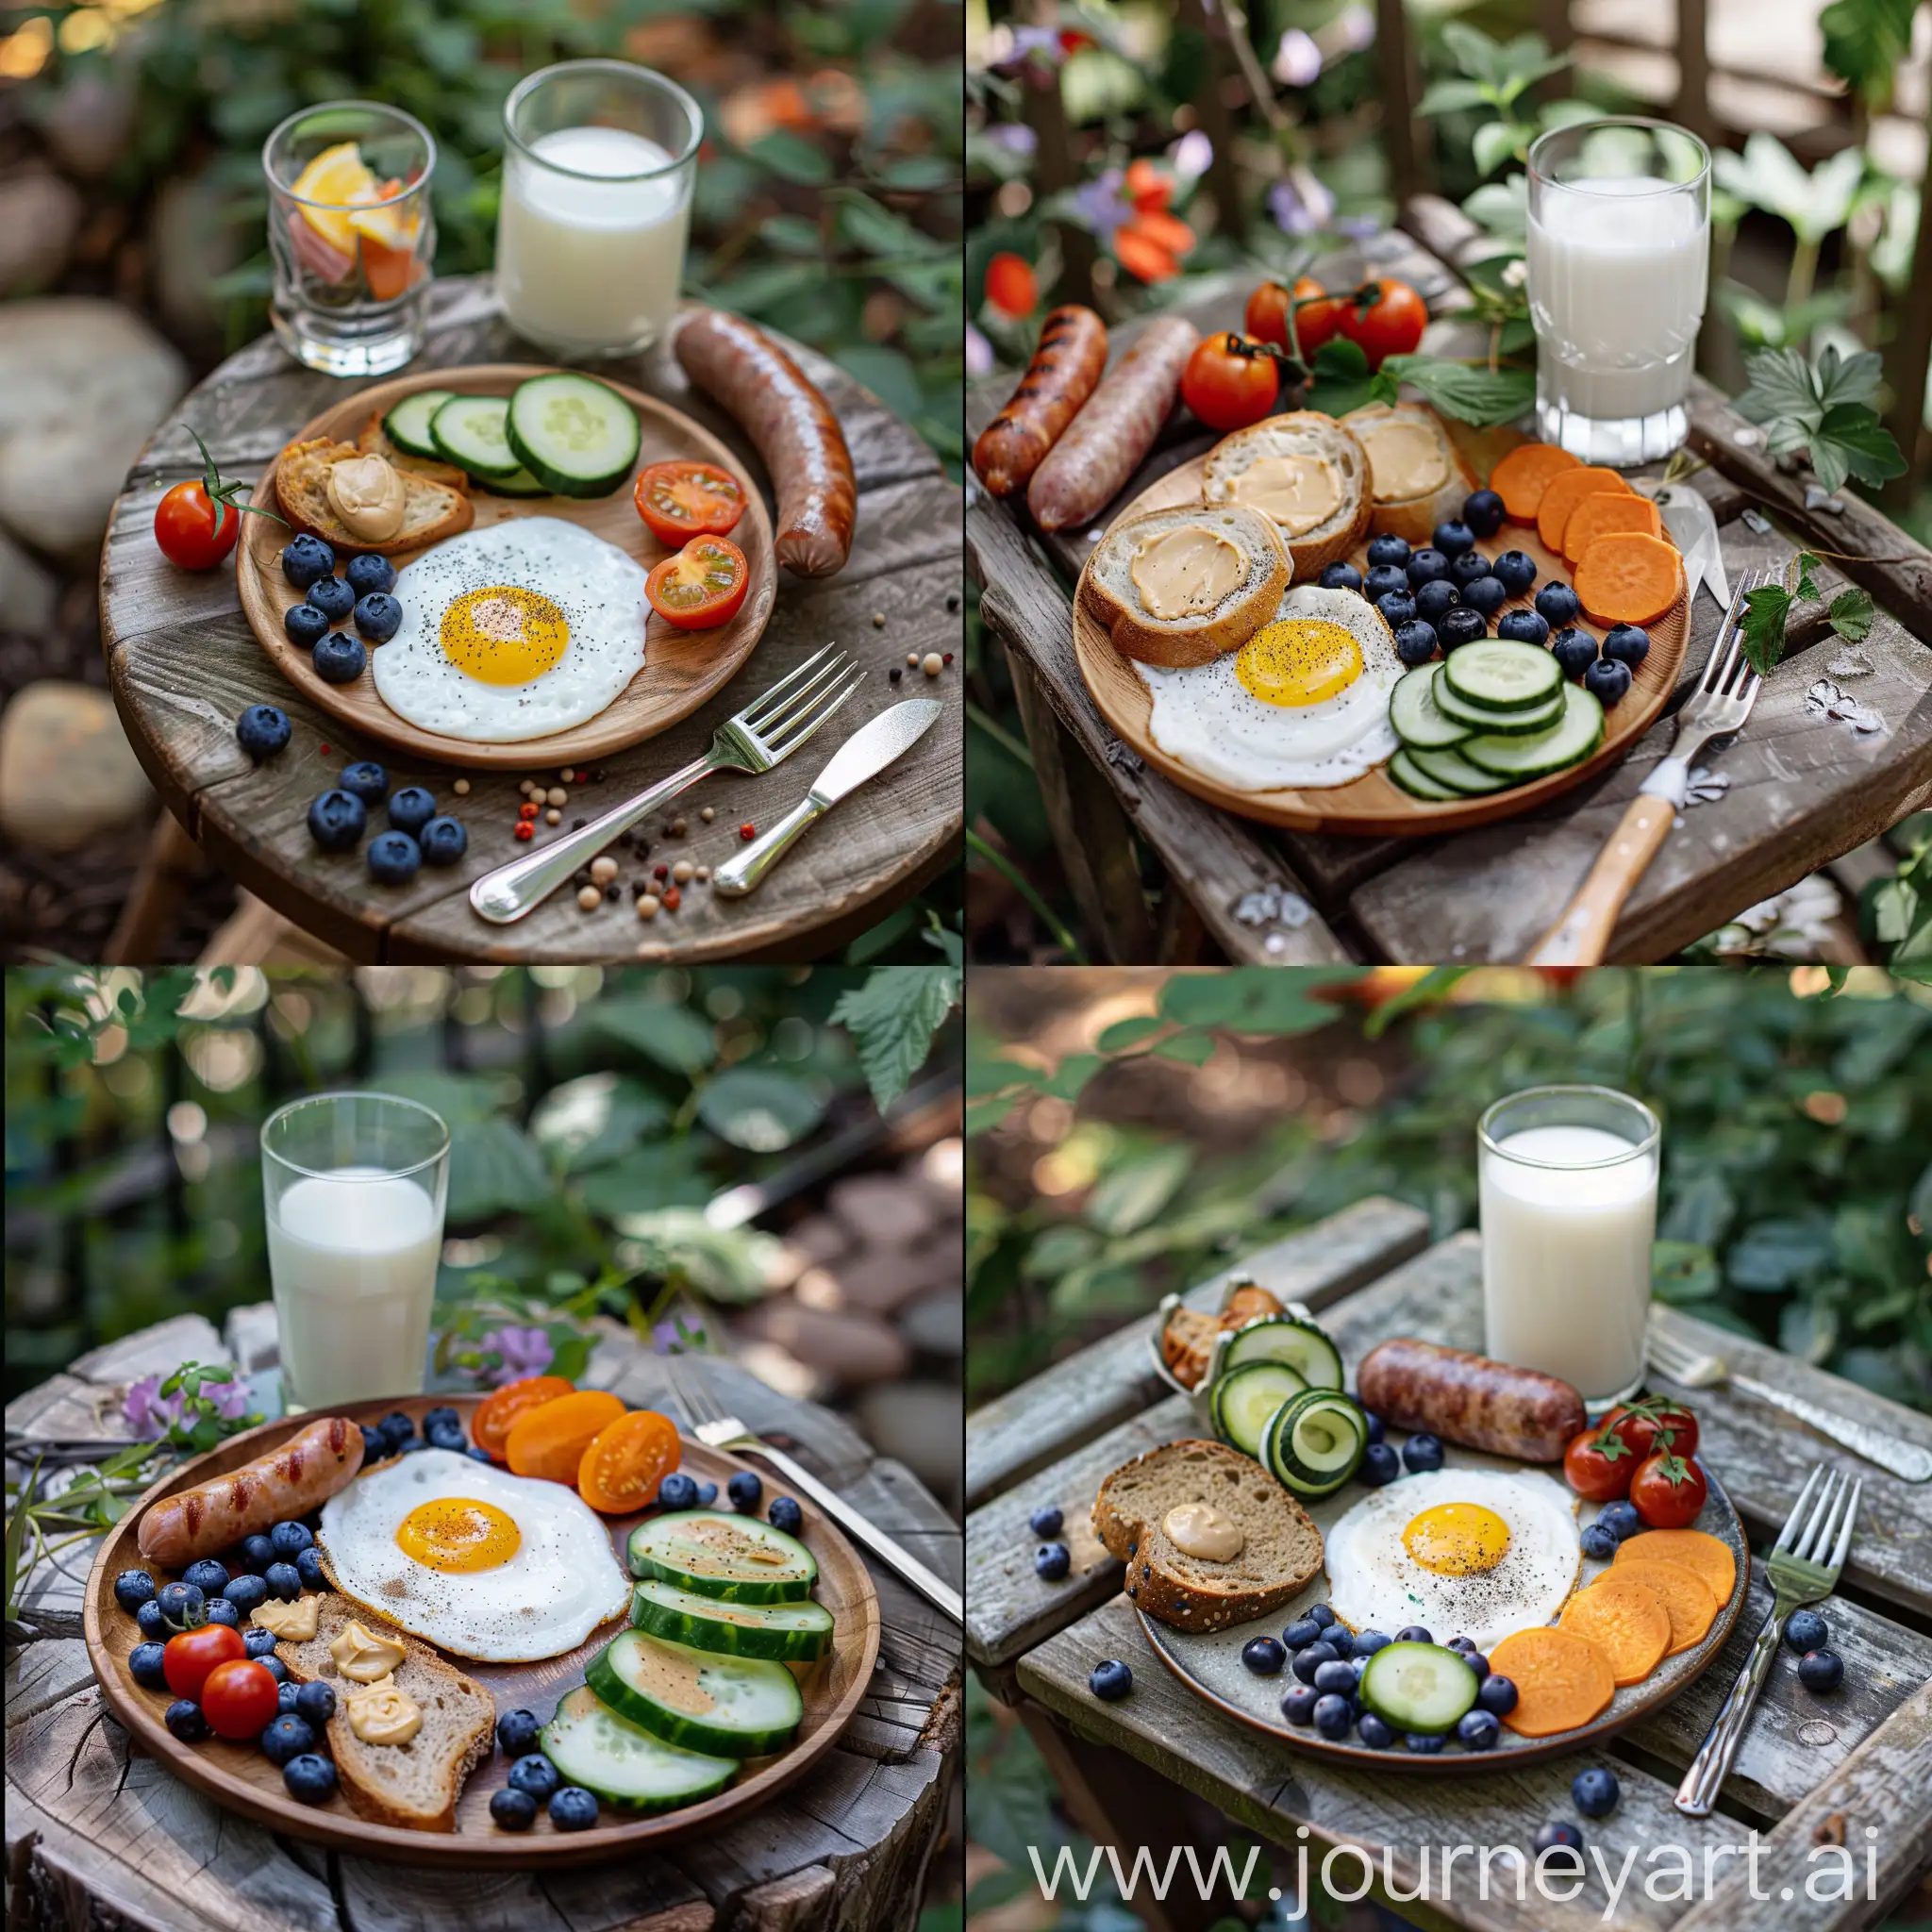 Healthy-Breakfast-Spread-in-Garden-Setting